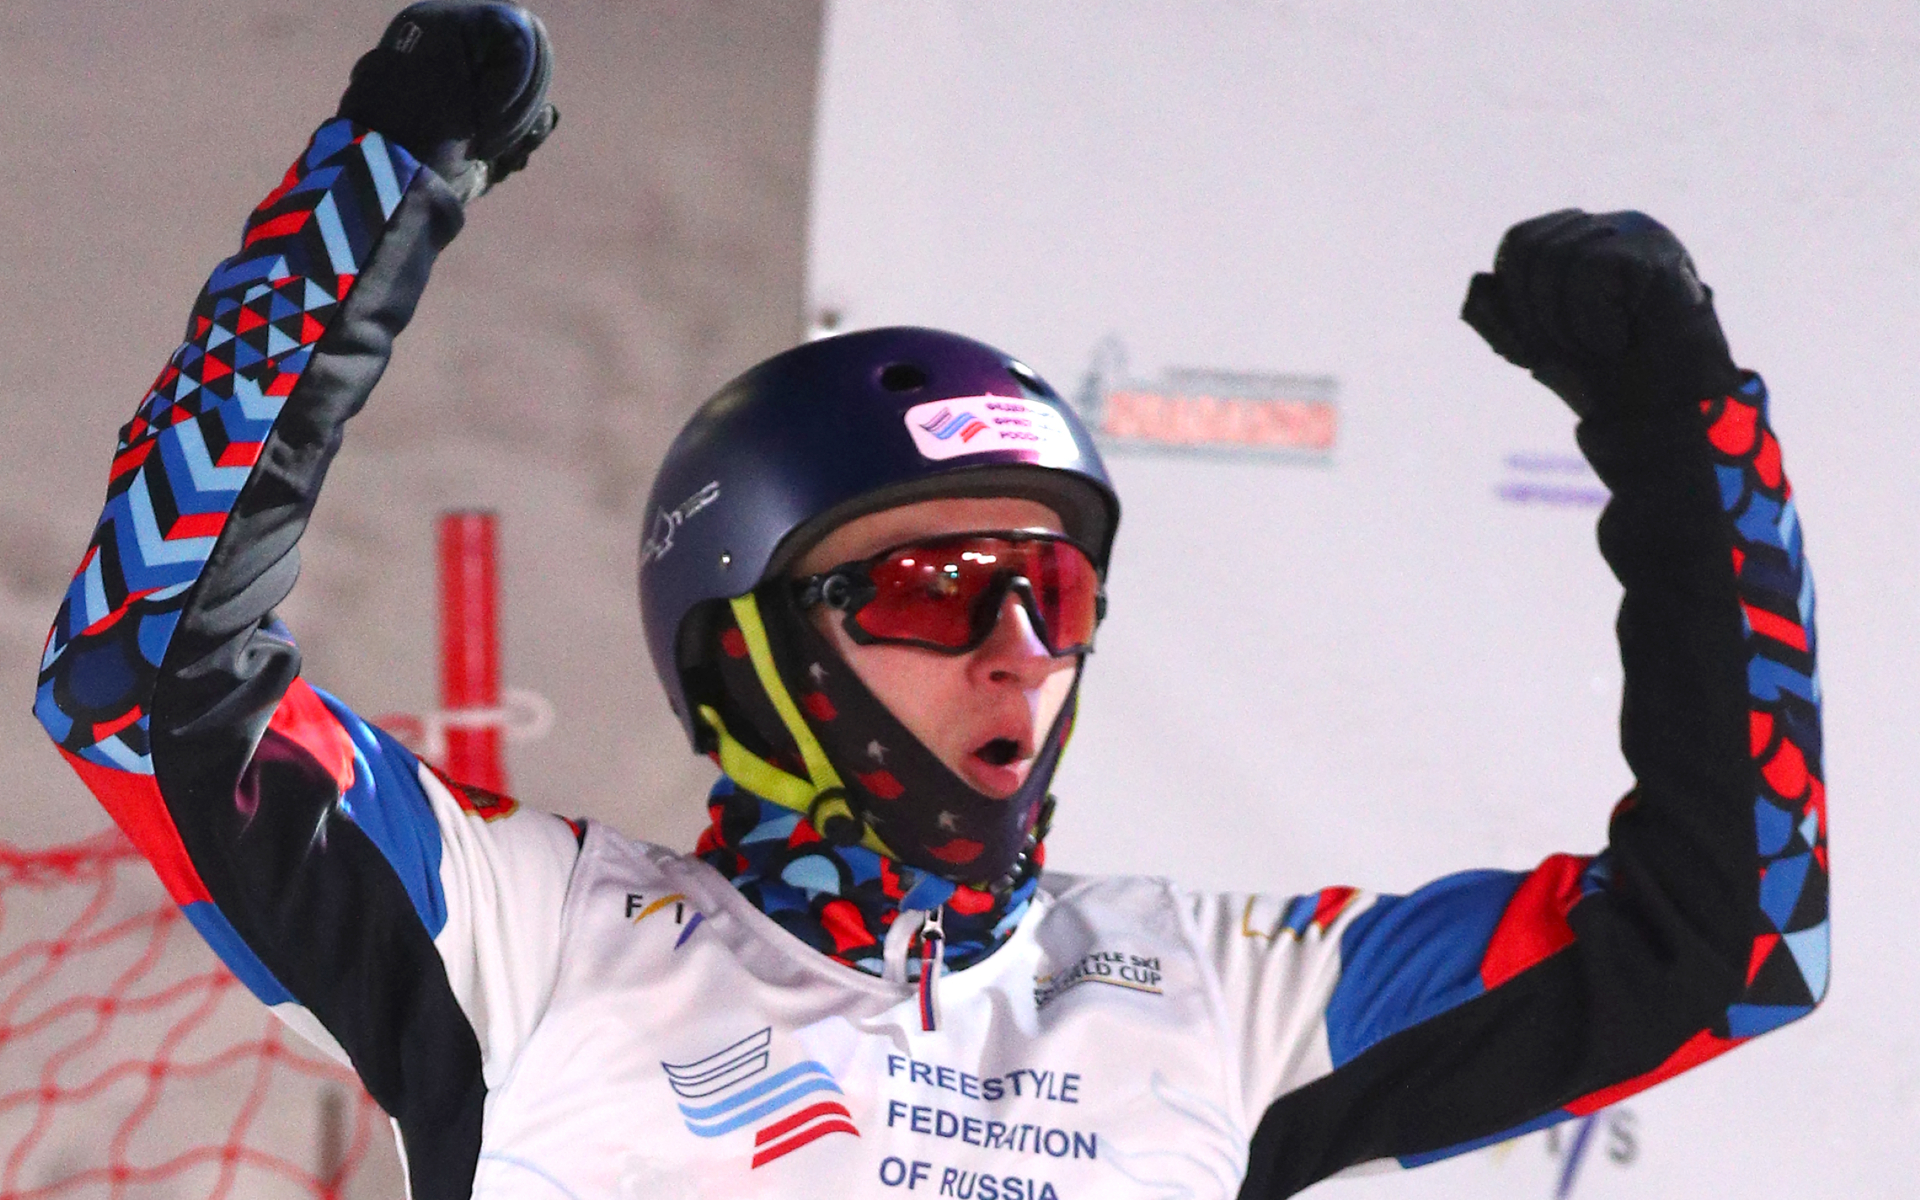 Сборная России выиграла пятое золото на ЧМ по фристайлу и сноуборду